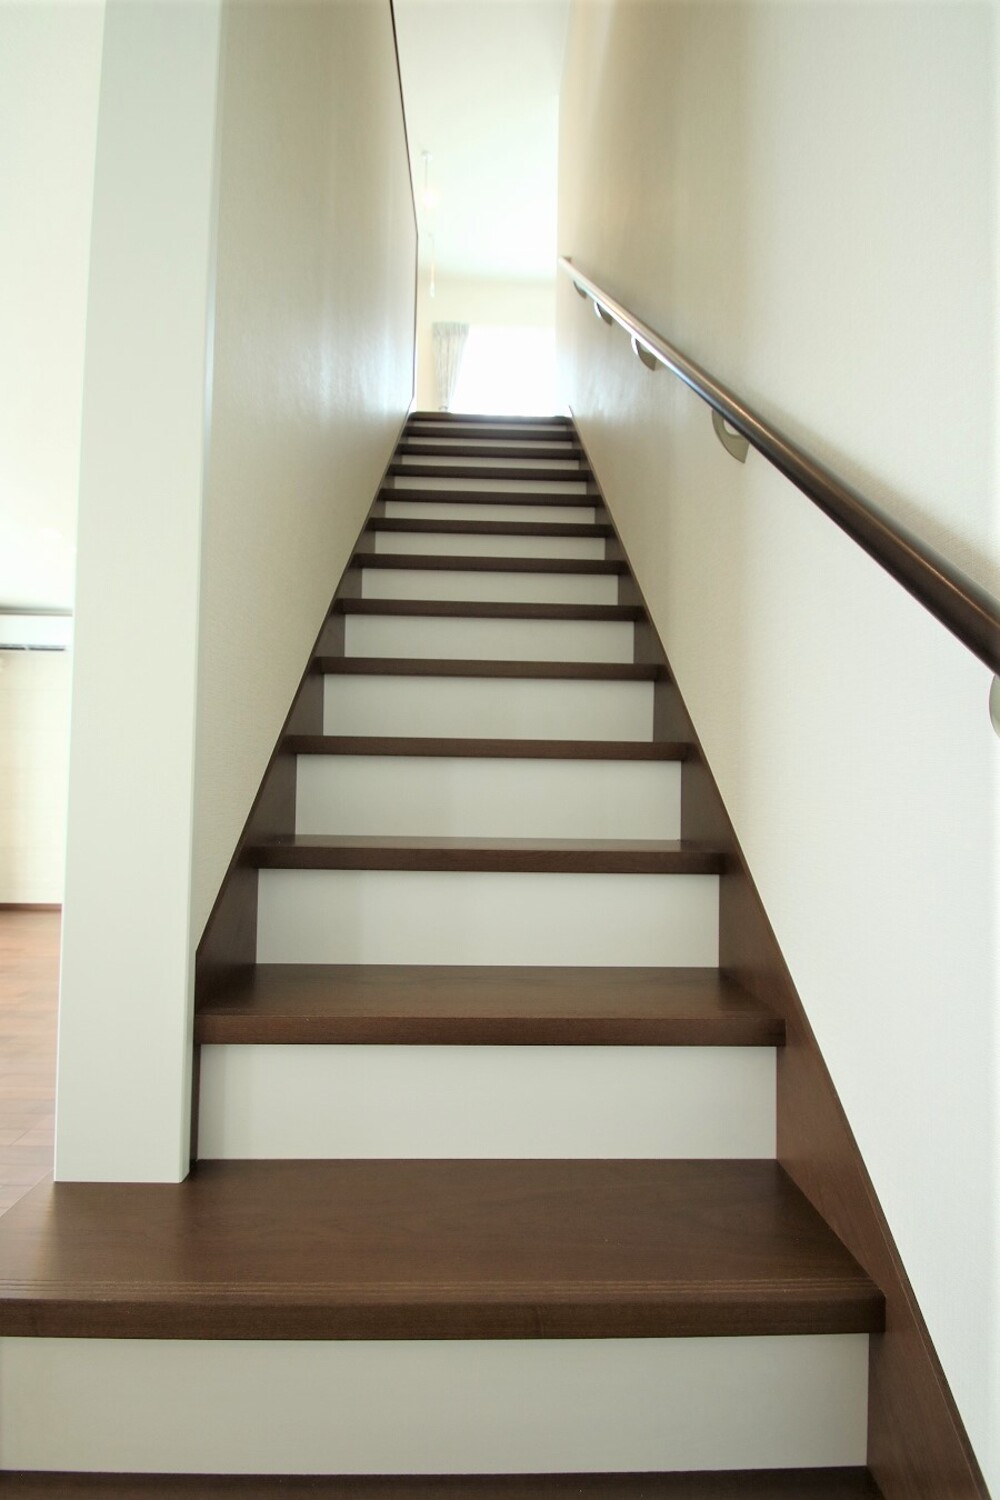 まとまった色合いのシンプルな家階段